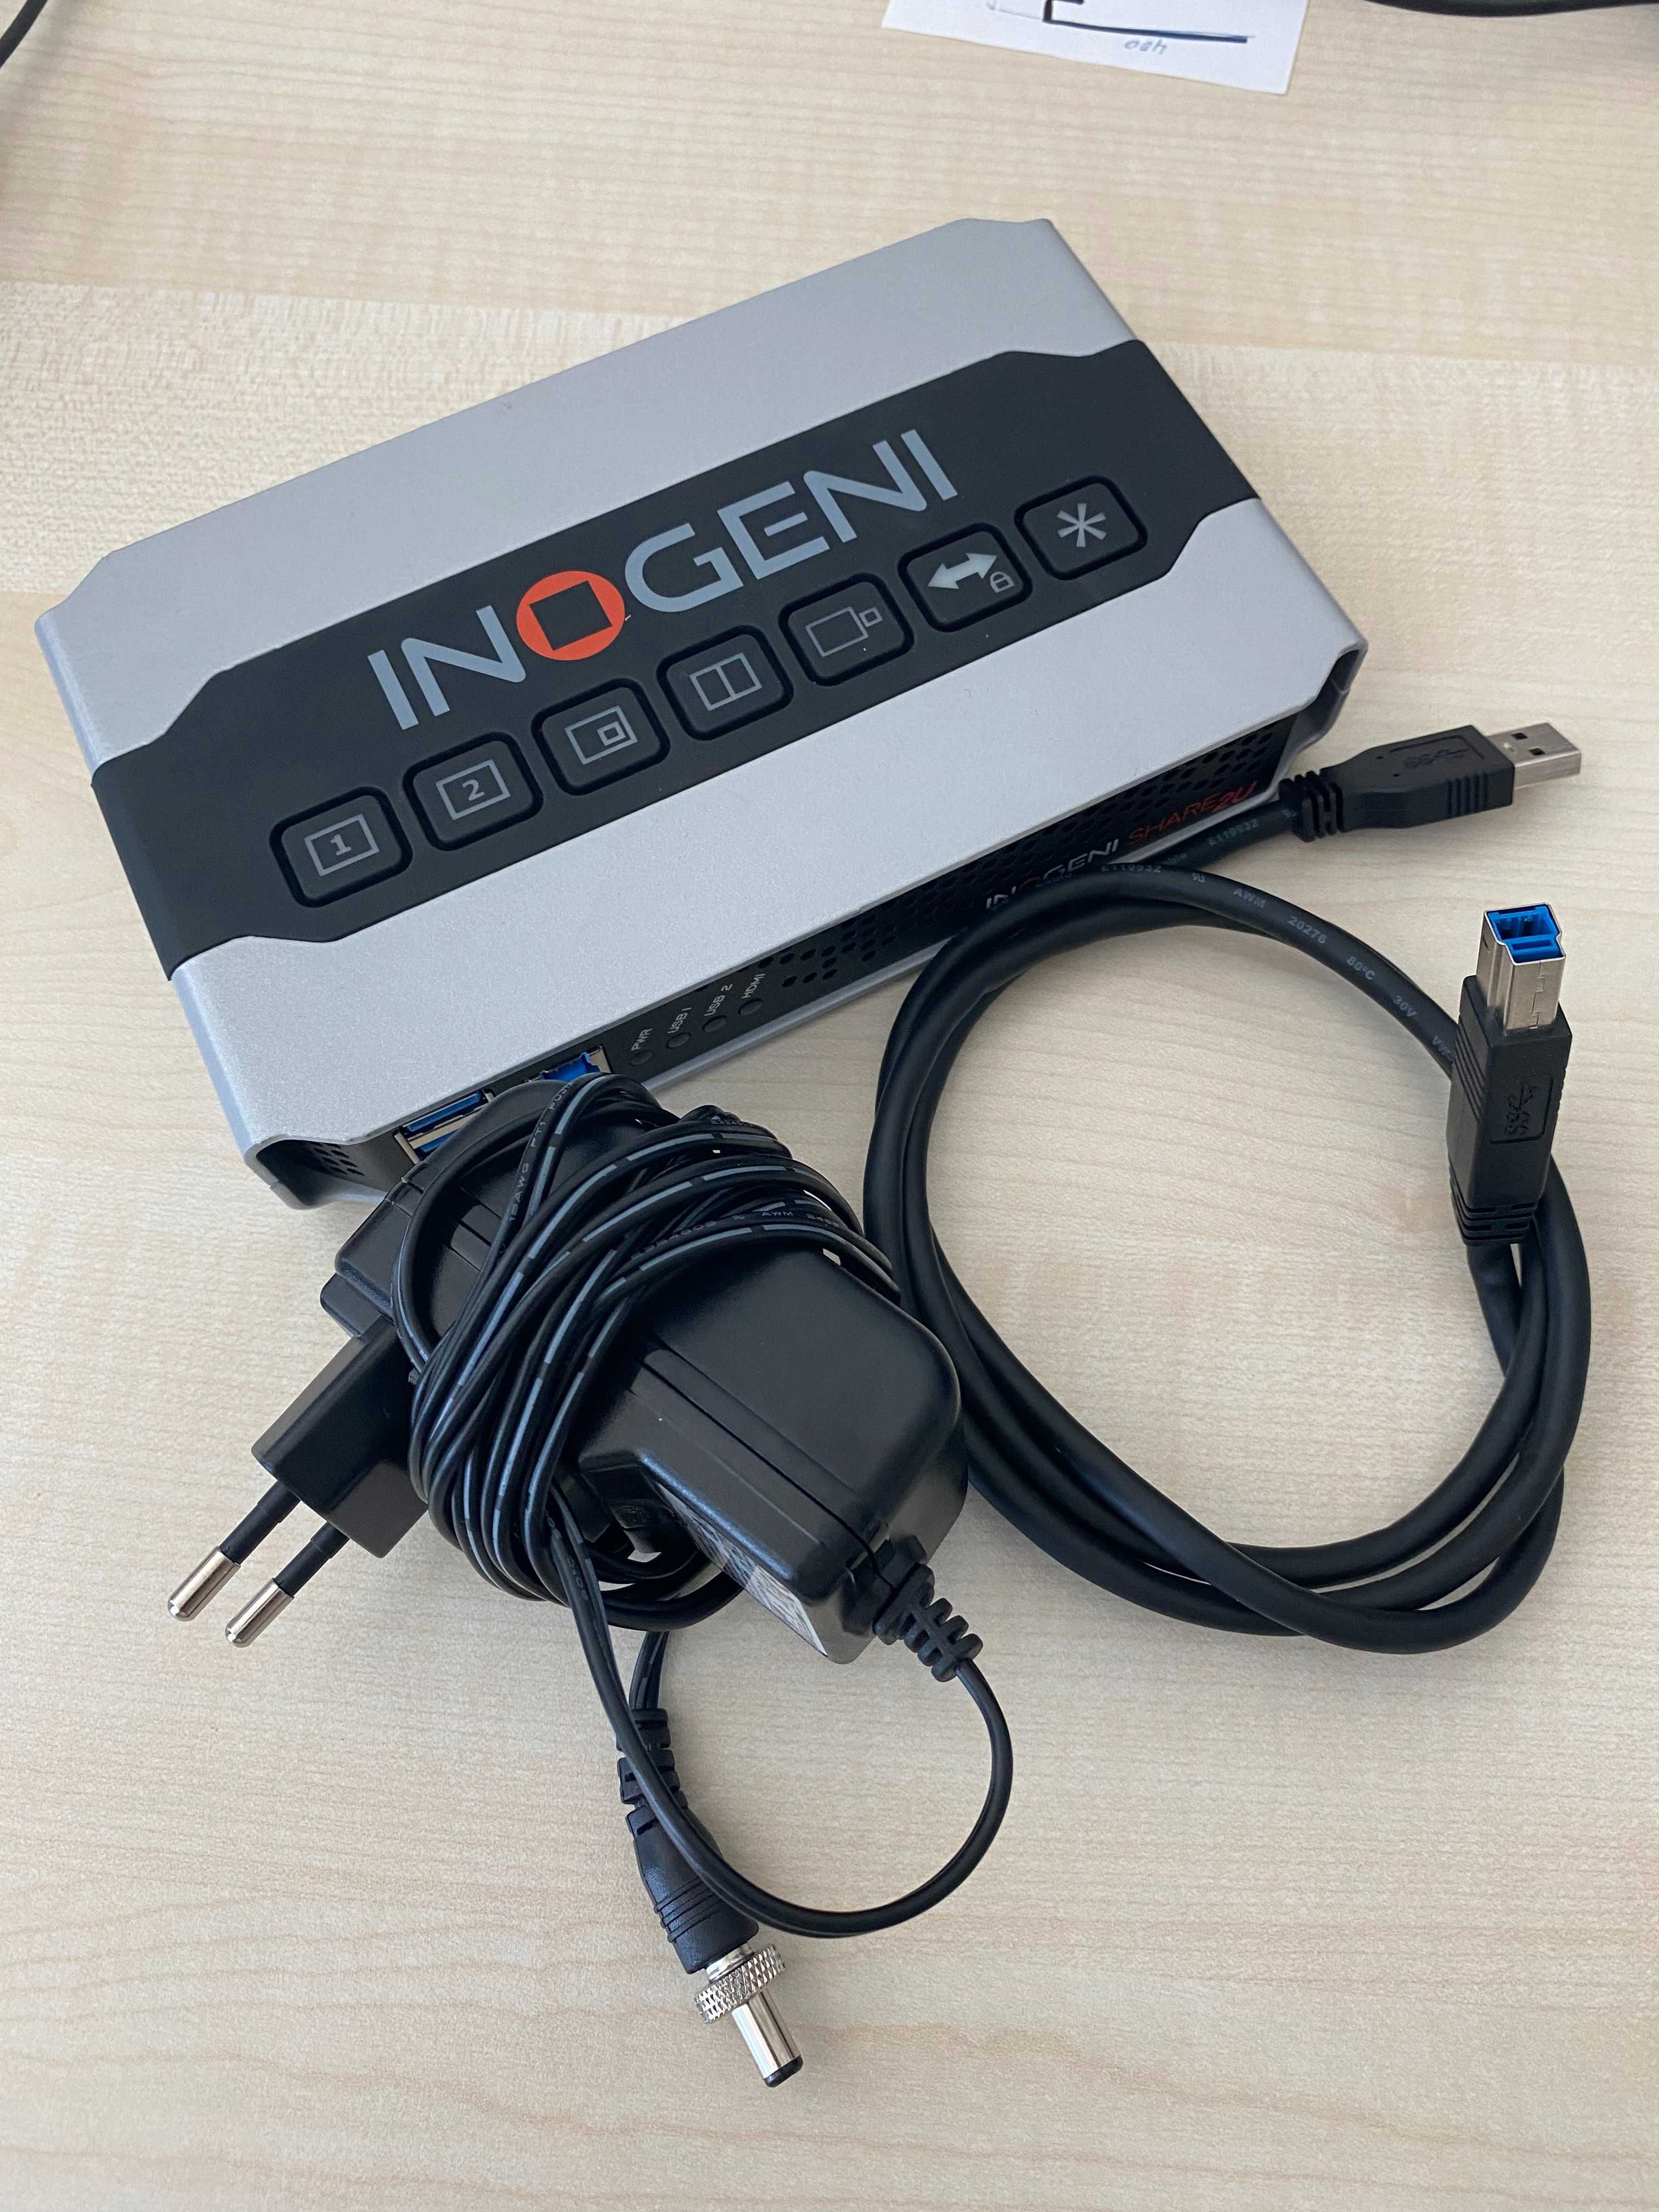 INOGENI SHARE2U USB/HDMI Mixer and Capture Device